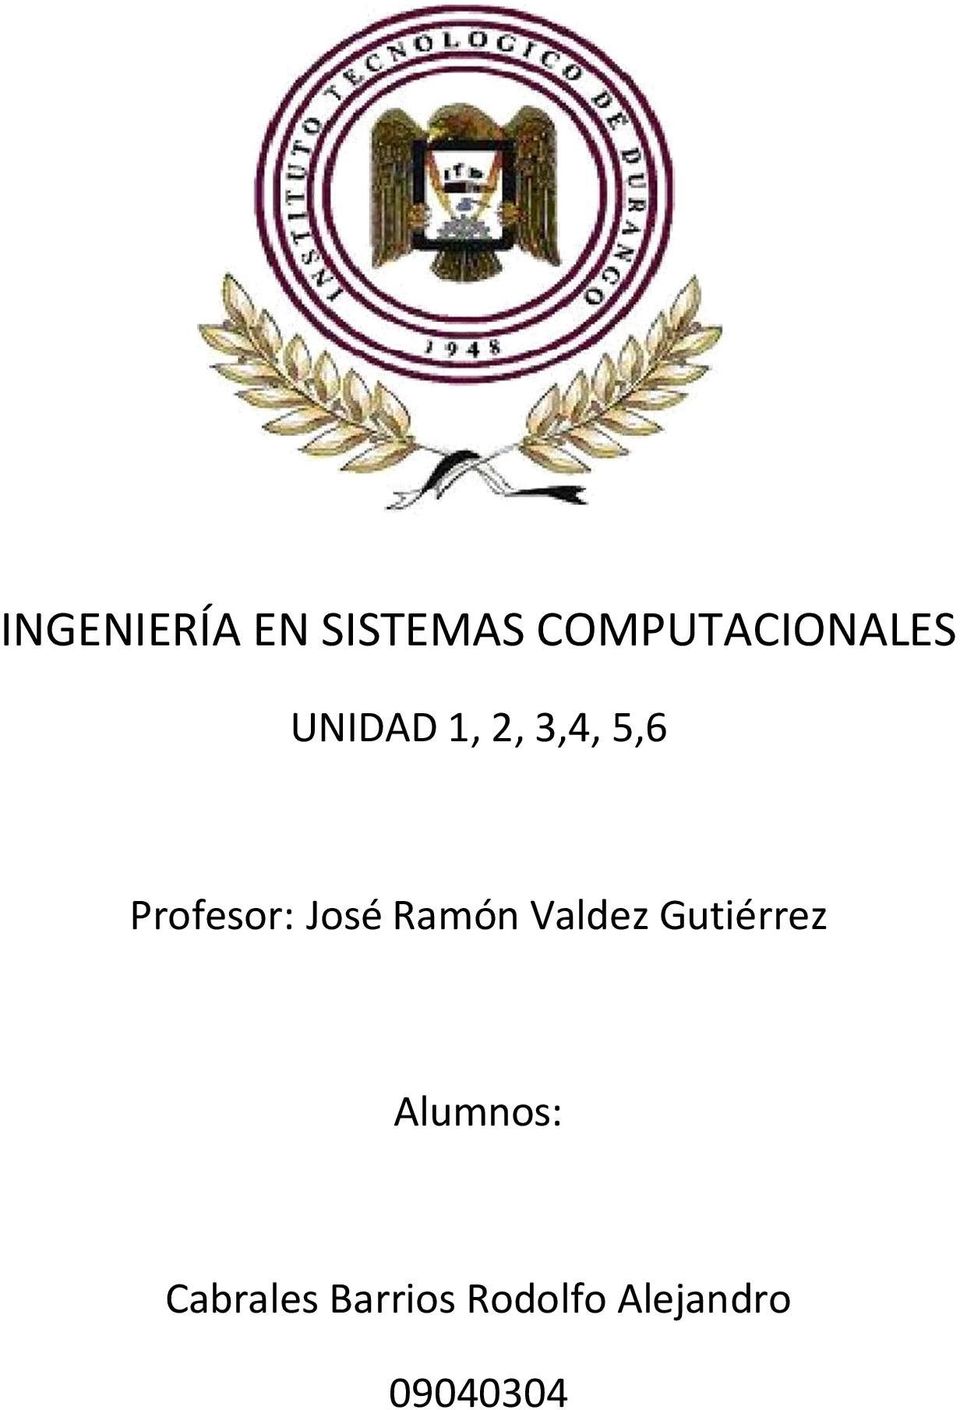 Profesor: José Ramón Valdez Gutiérrez